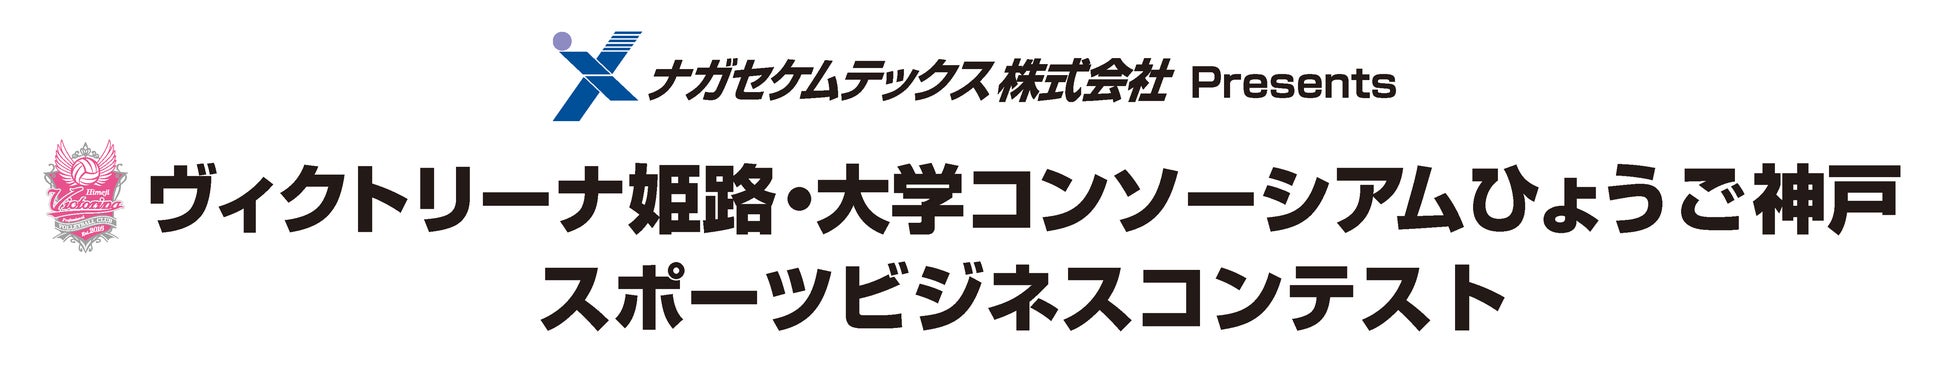 浦和レッズがファン参加型スポンサーサービス「en-chant」を導入